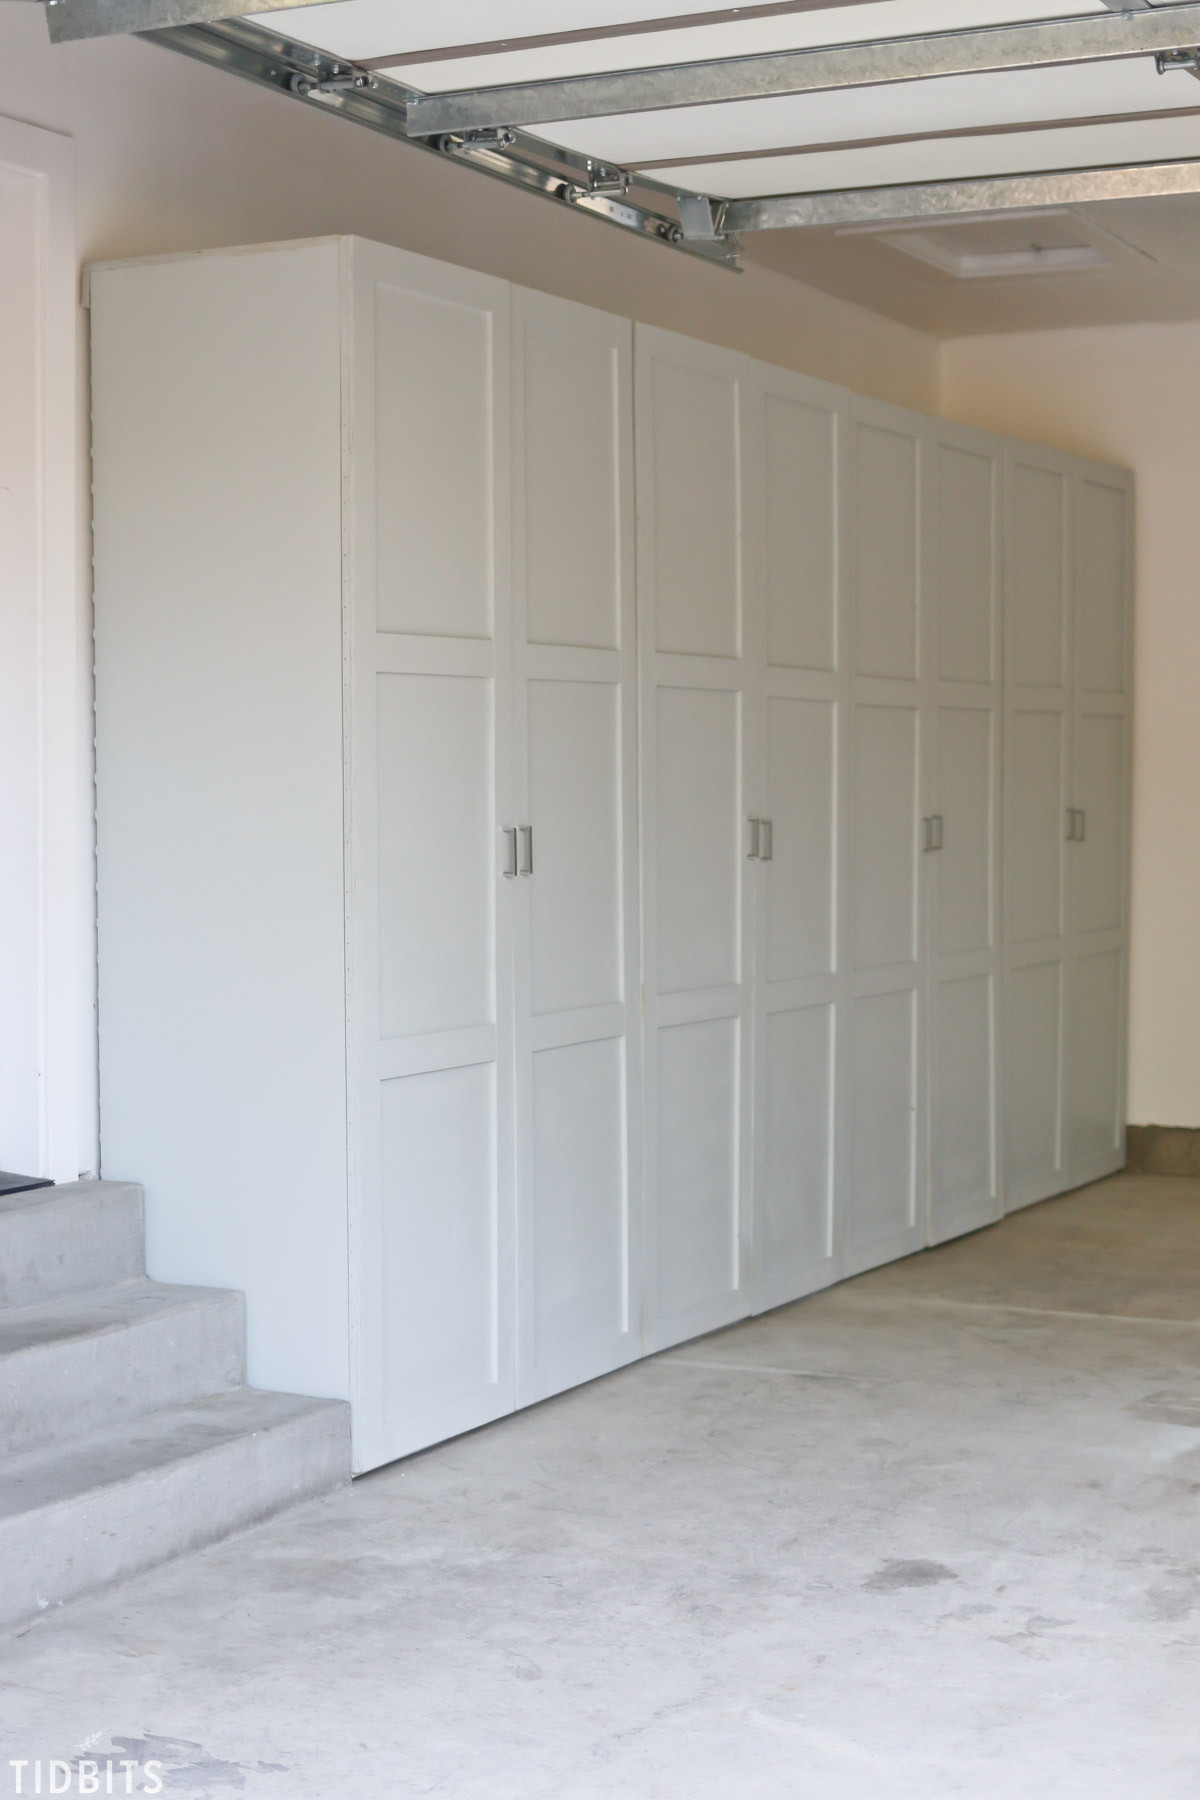 Garage Organizers Plans
 Garage Storage Cabinets